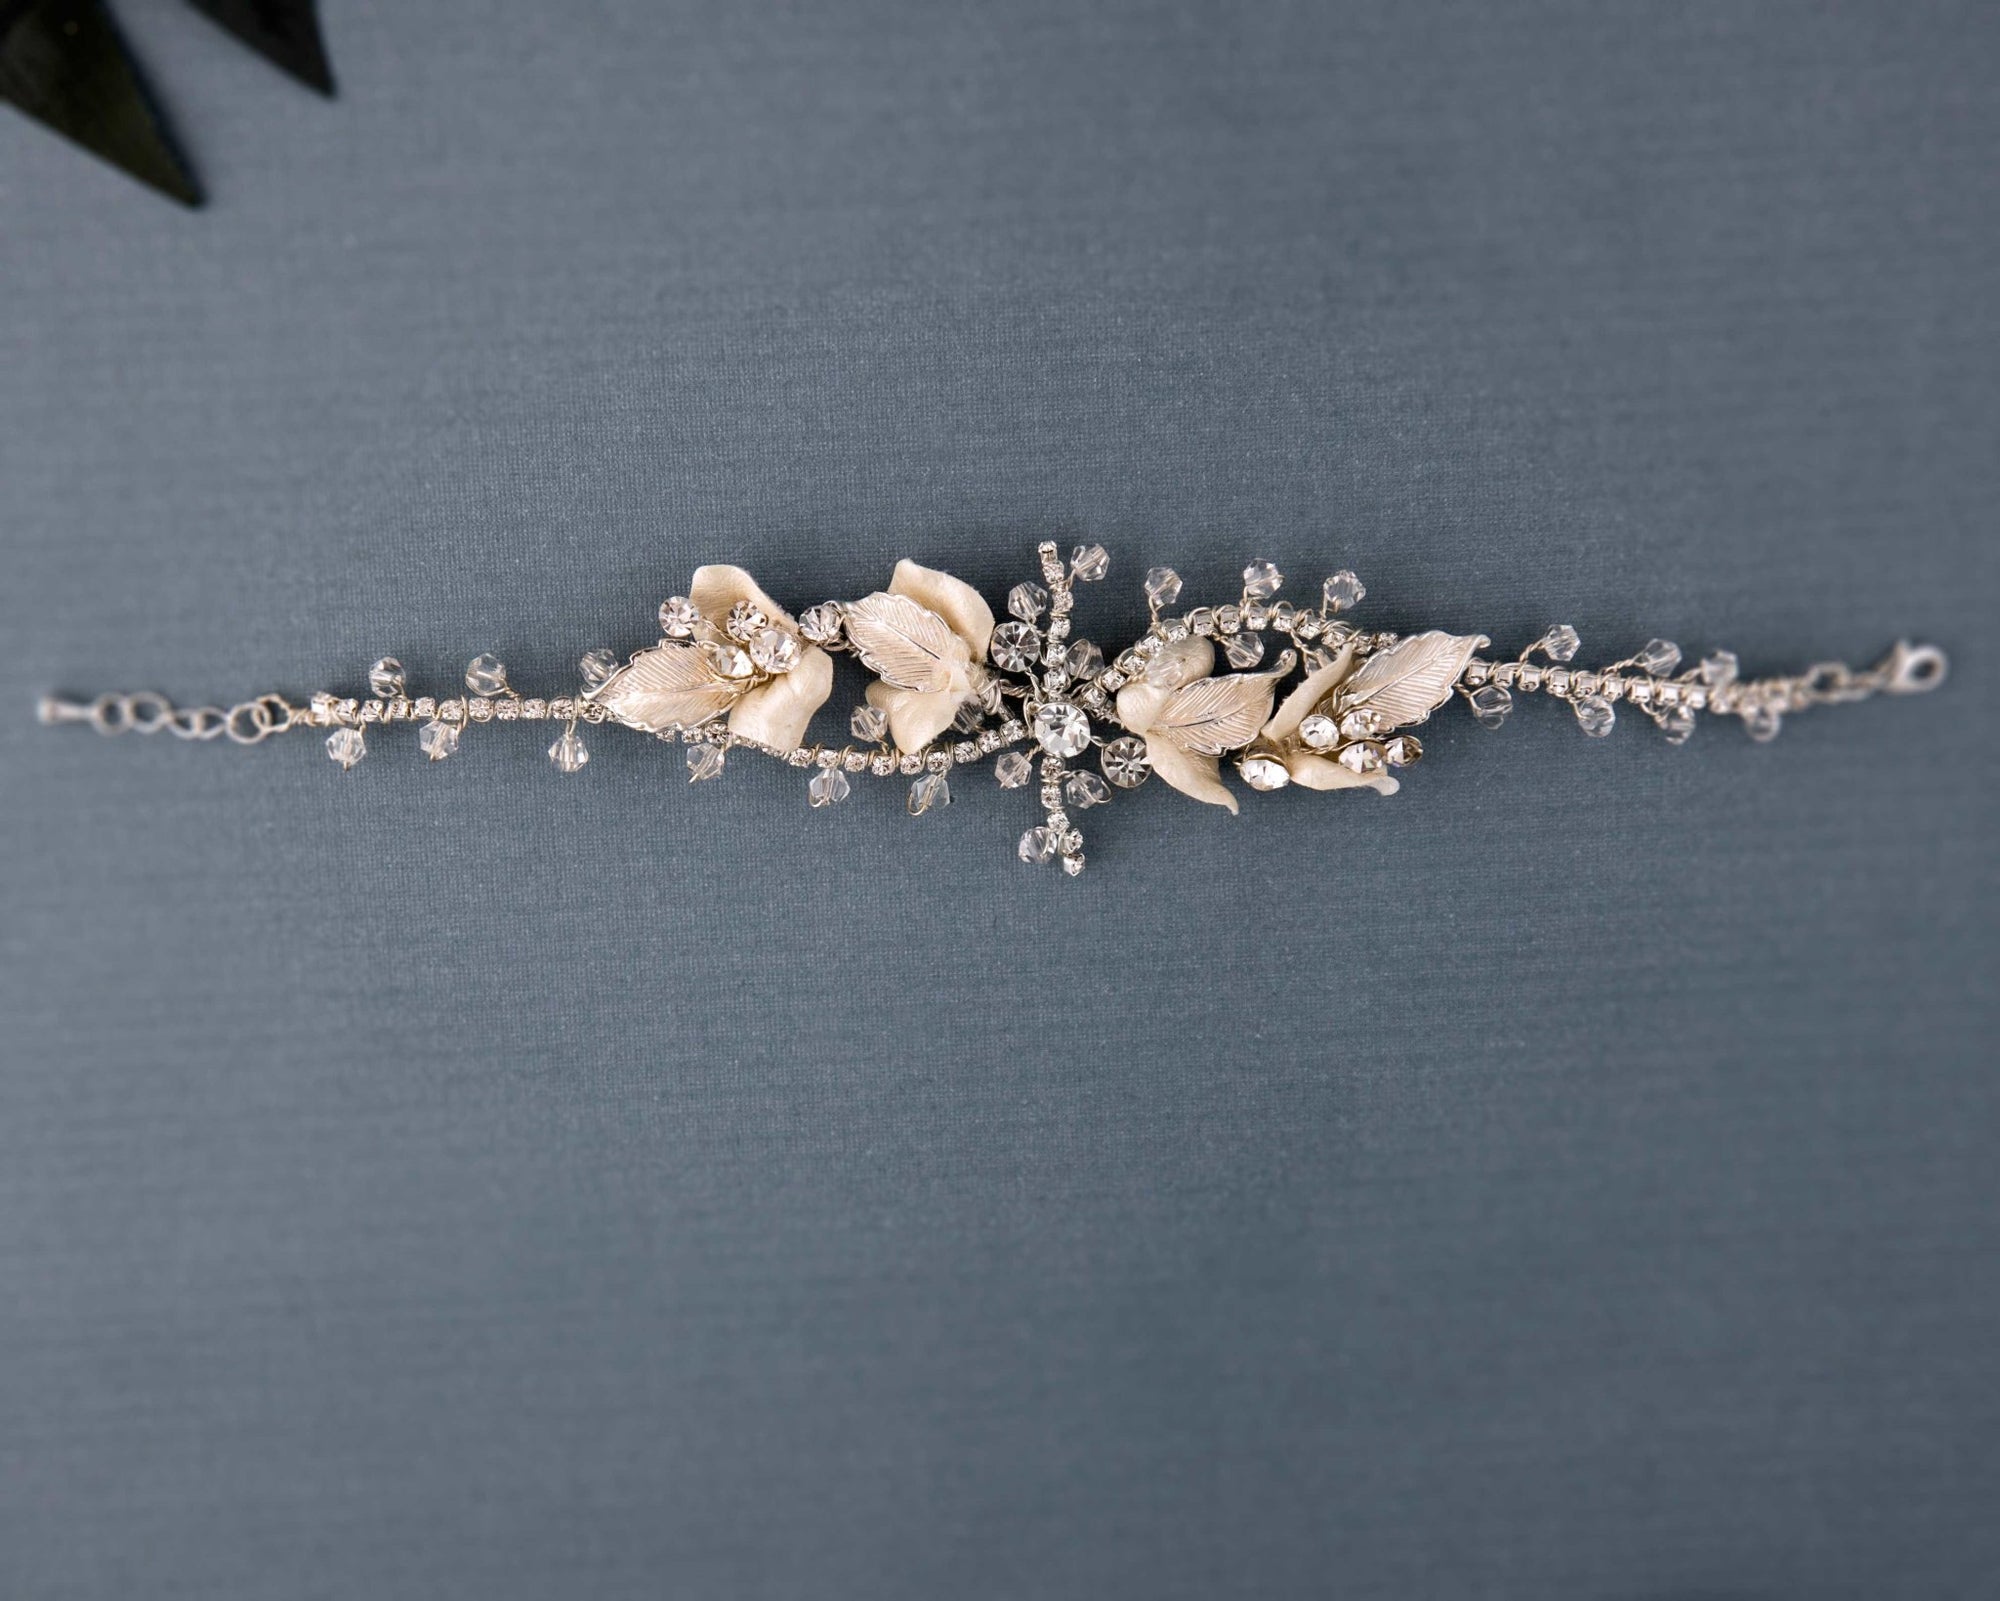 Hand-Made Crystal Petals Bracelet